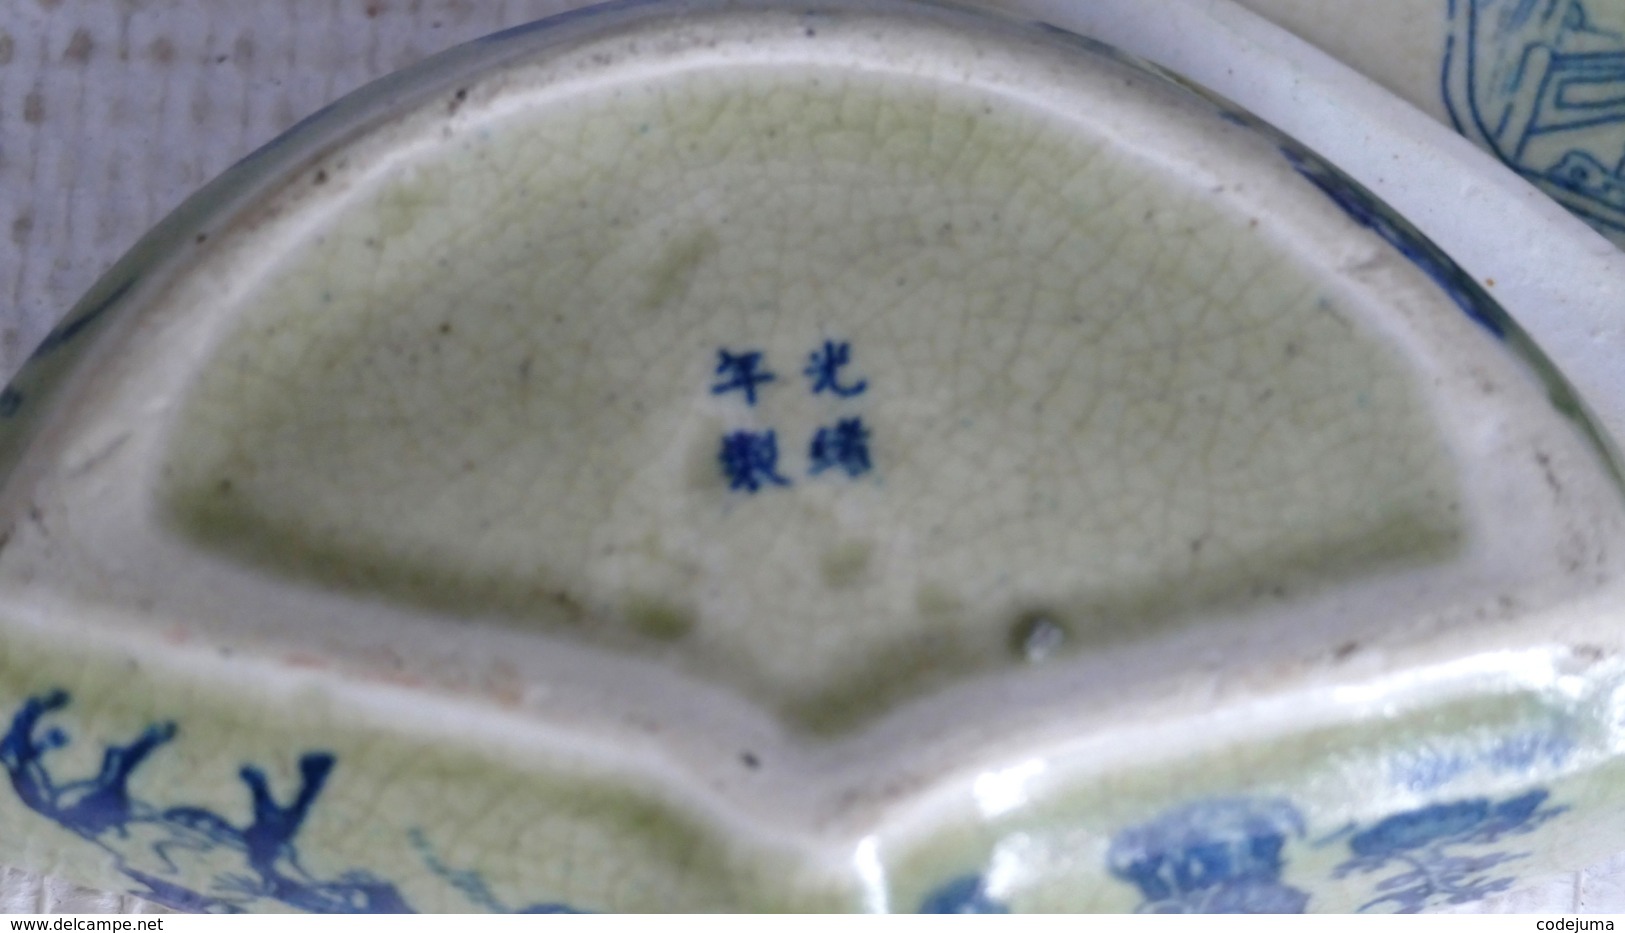 Boite ancienne en Evantail en porcelaine chinoise dessin erotique a l interieur